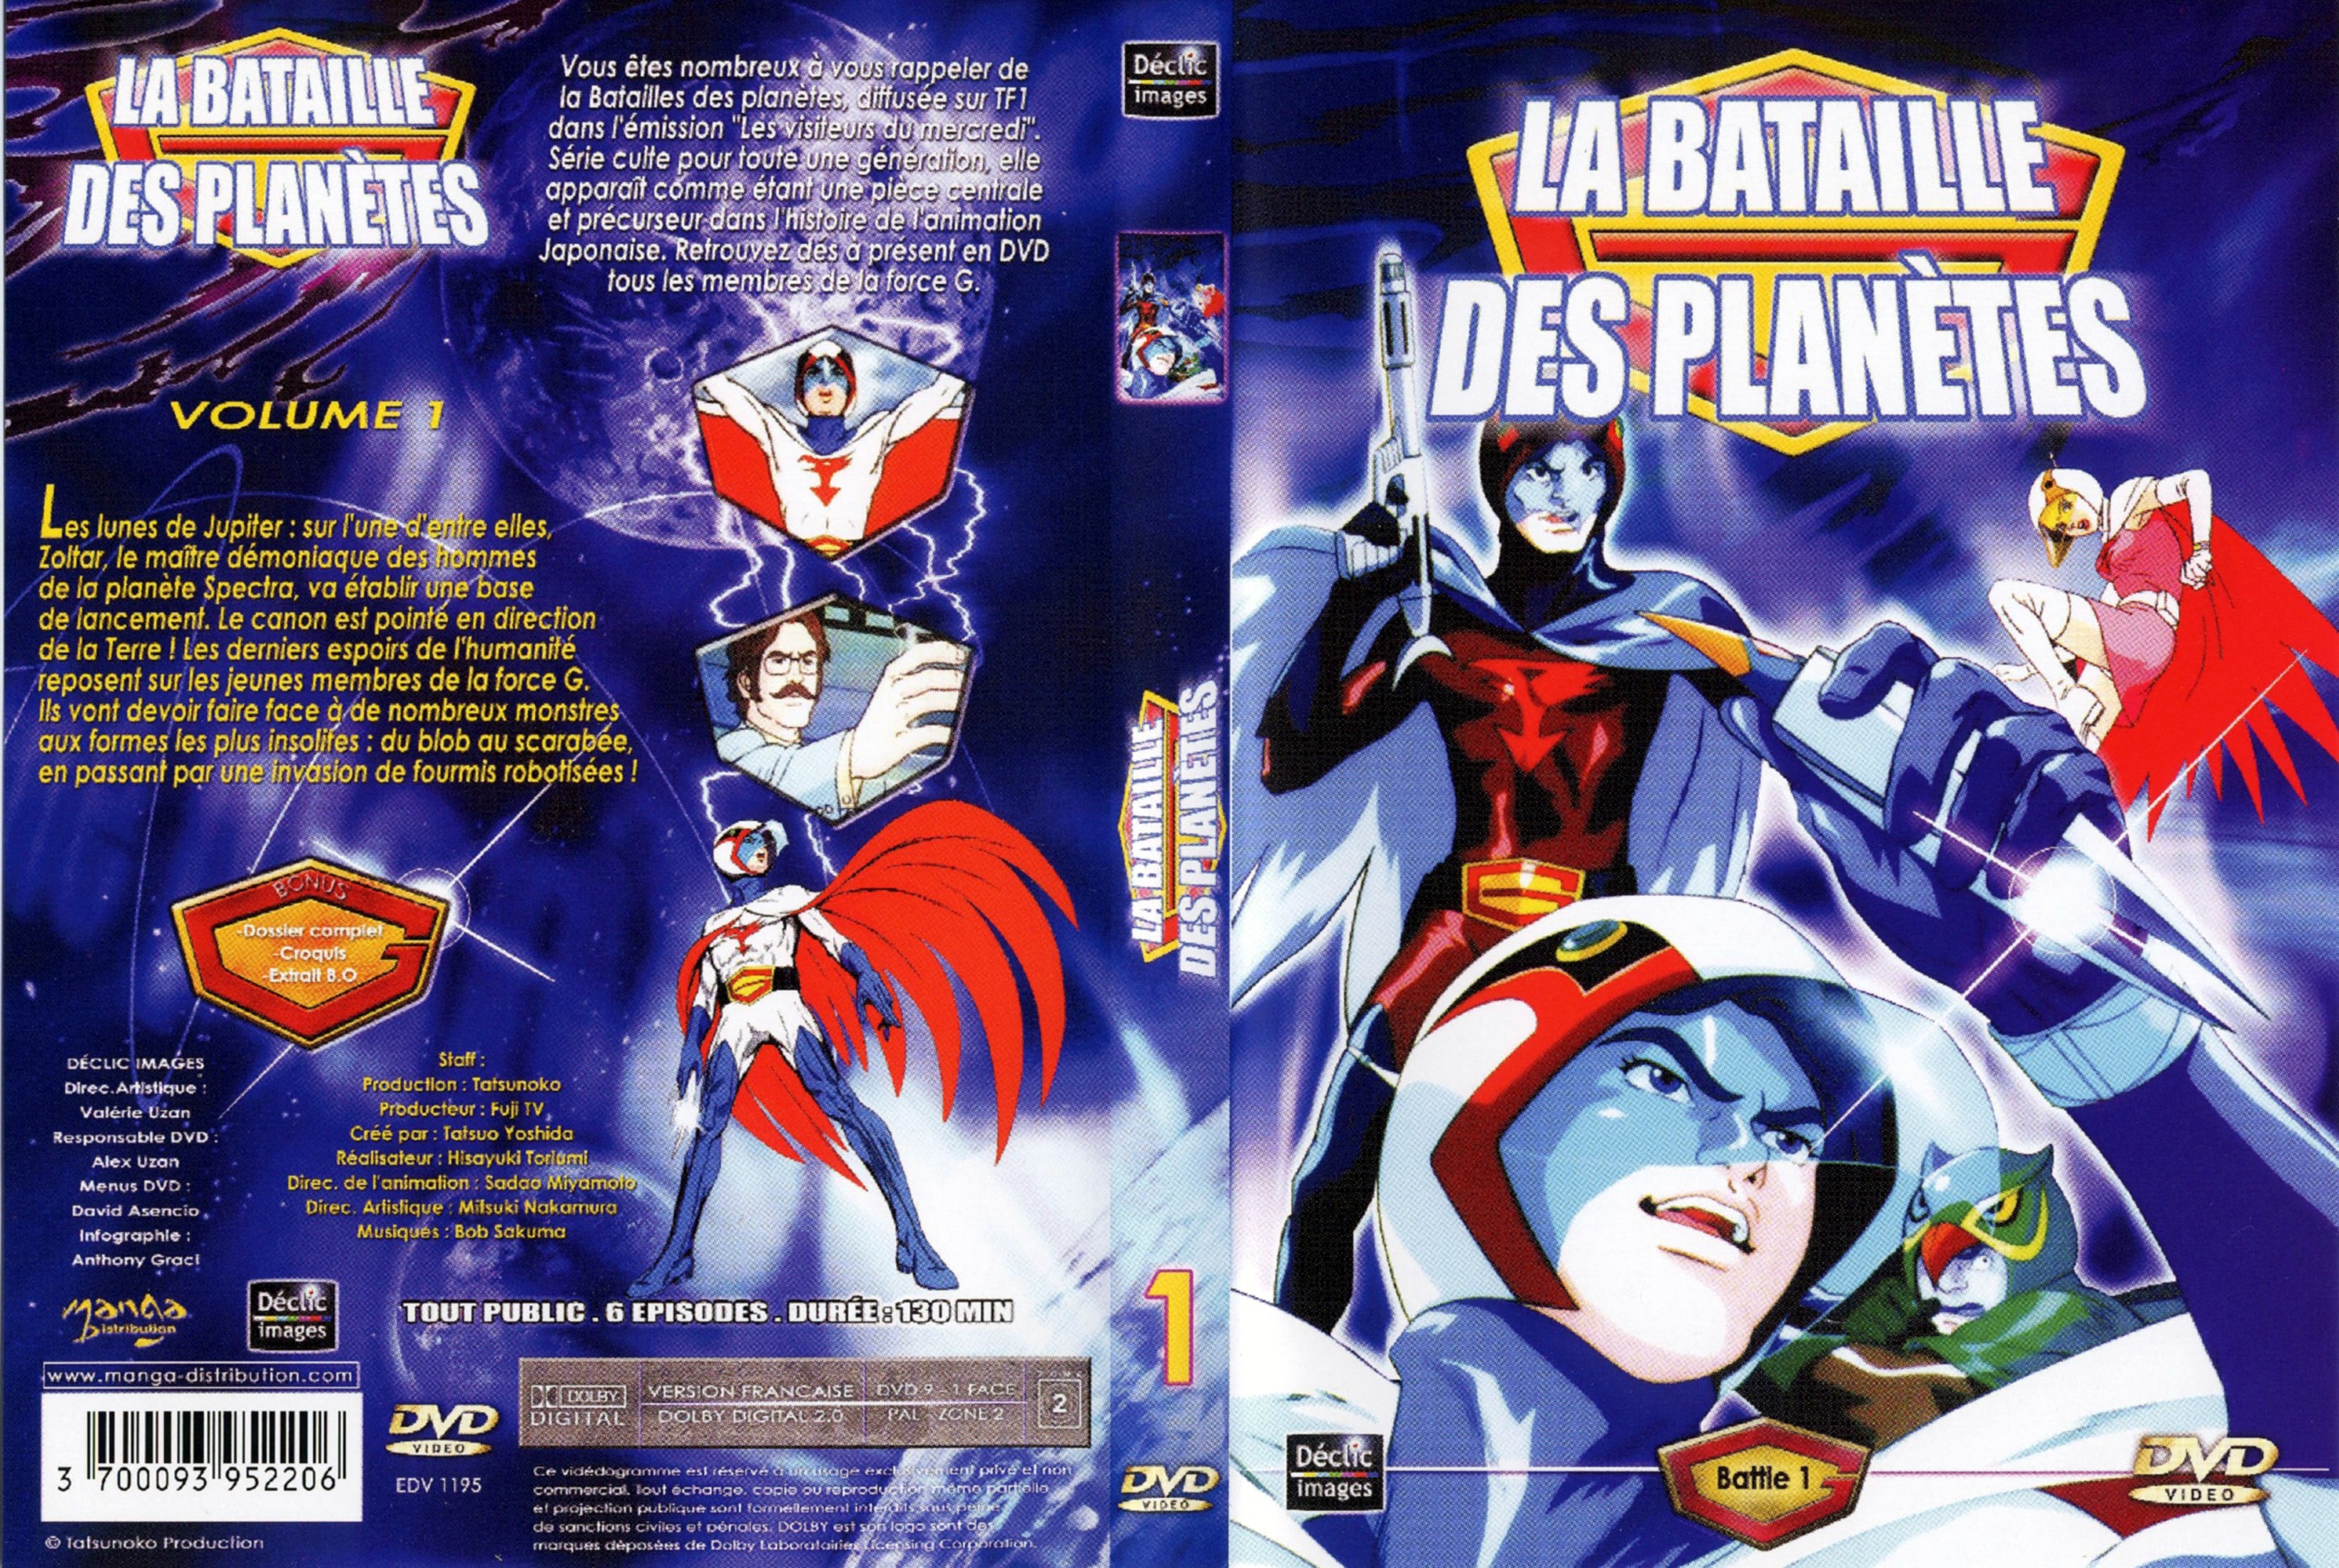 Jaquette DVD La bataille des planetes DVD 01